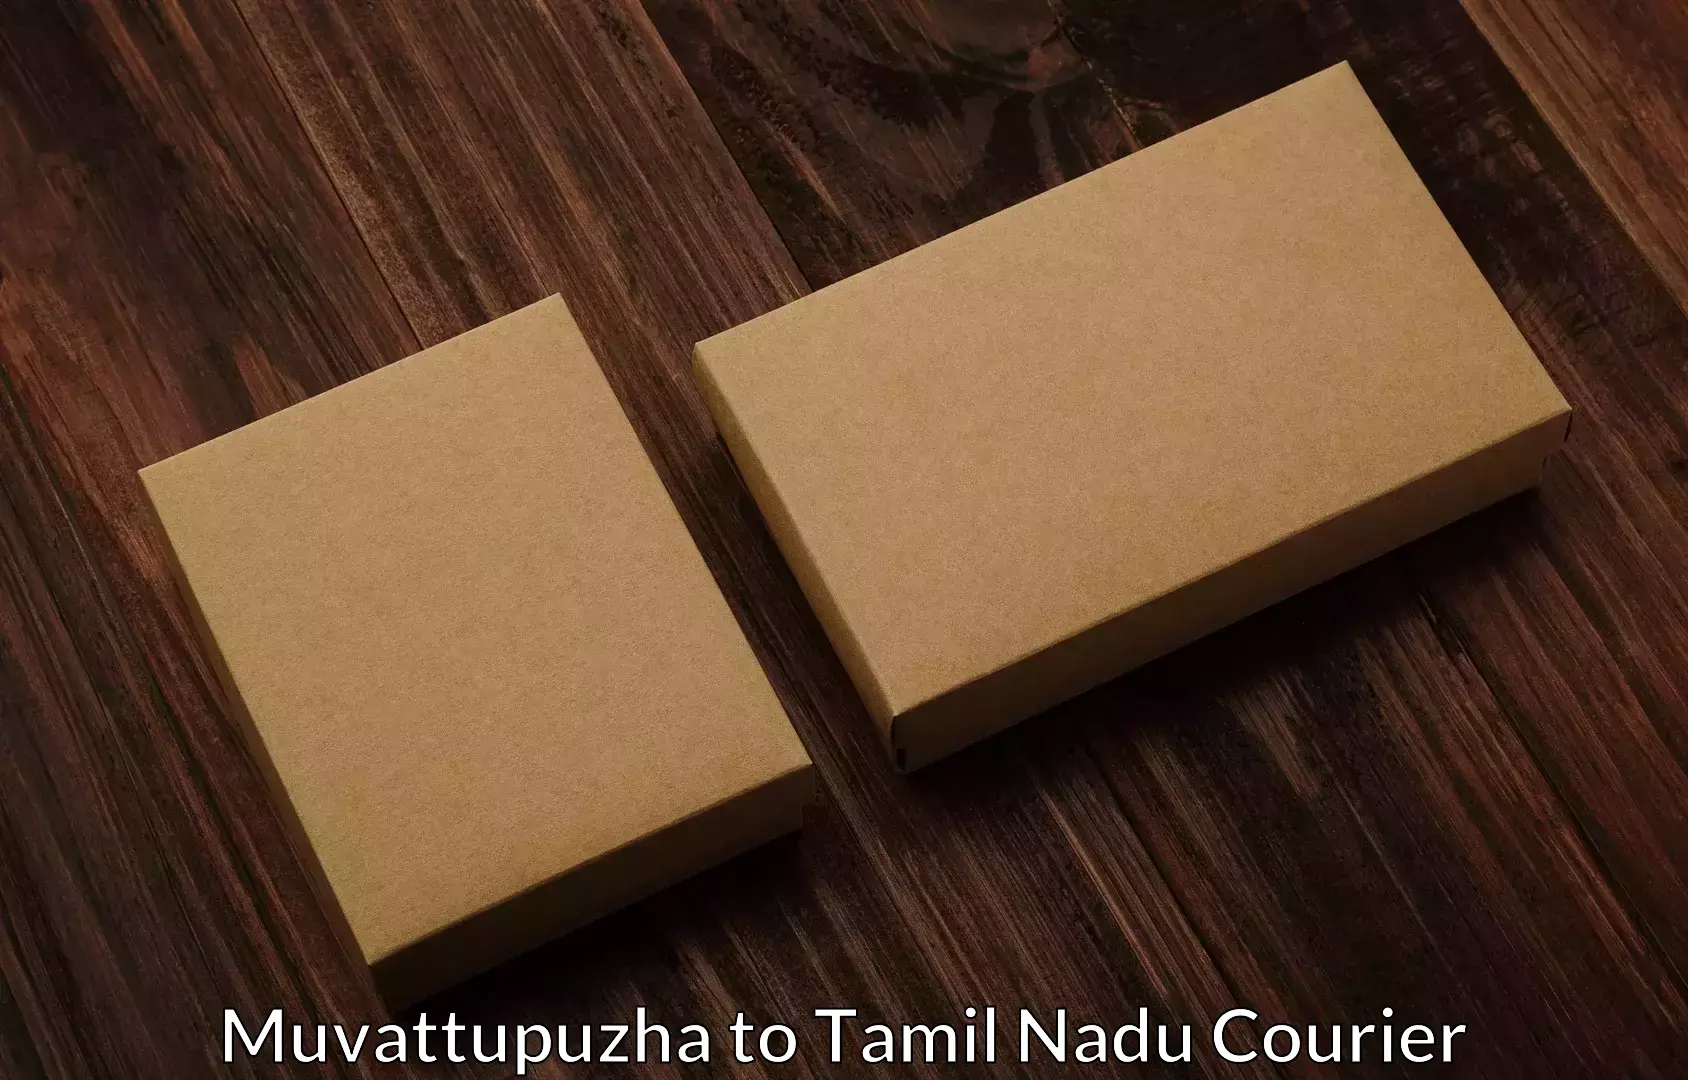 Furniture transport experts Muvattupuzha to Tamil Nadu